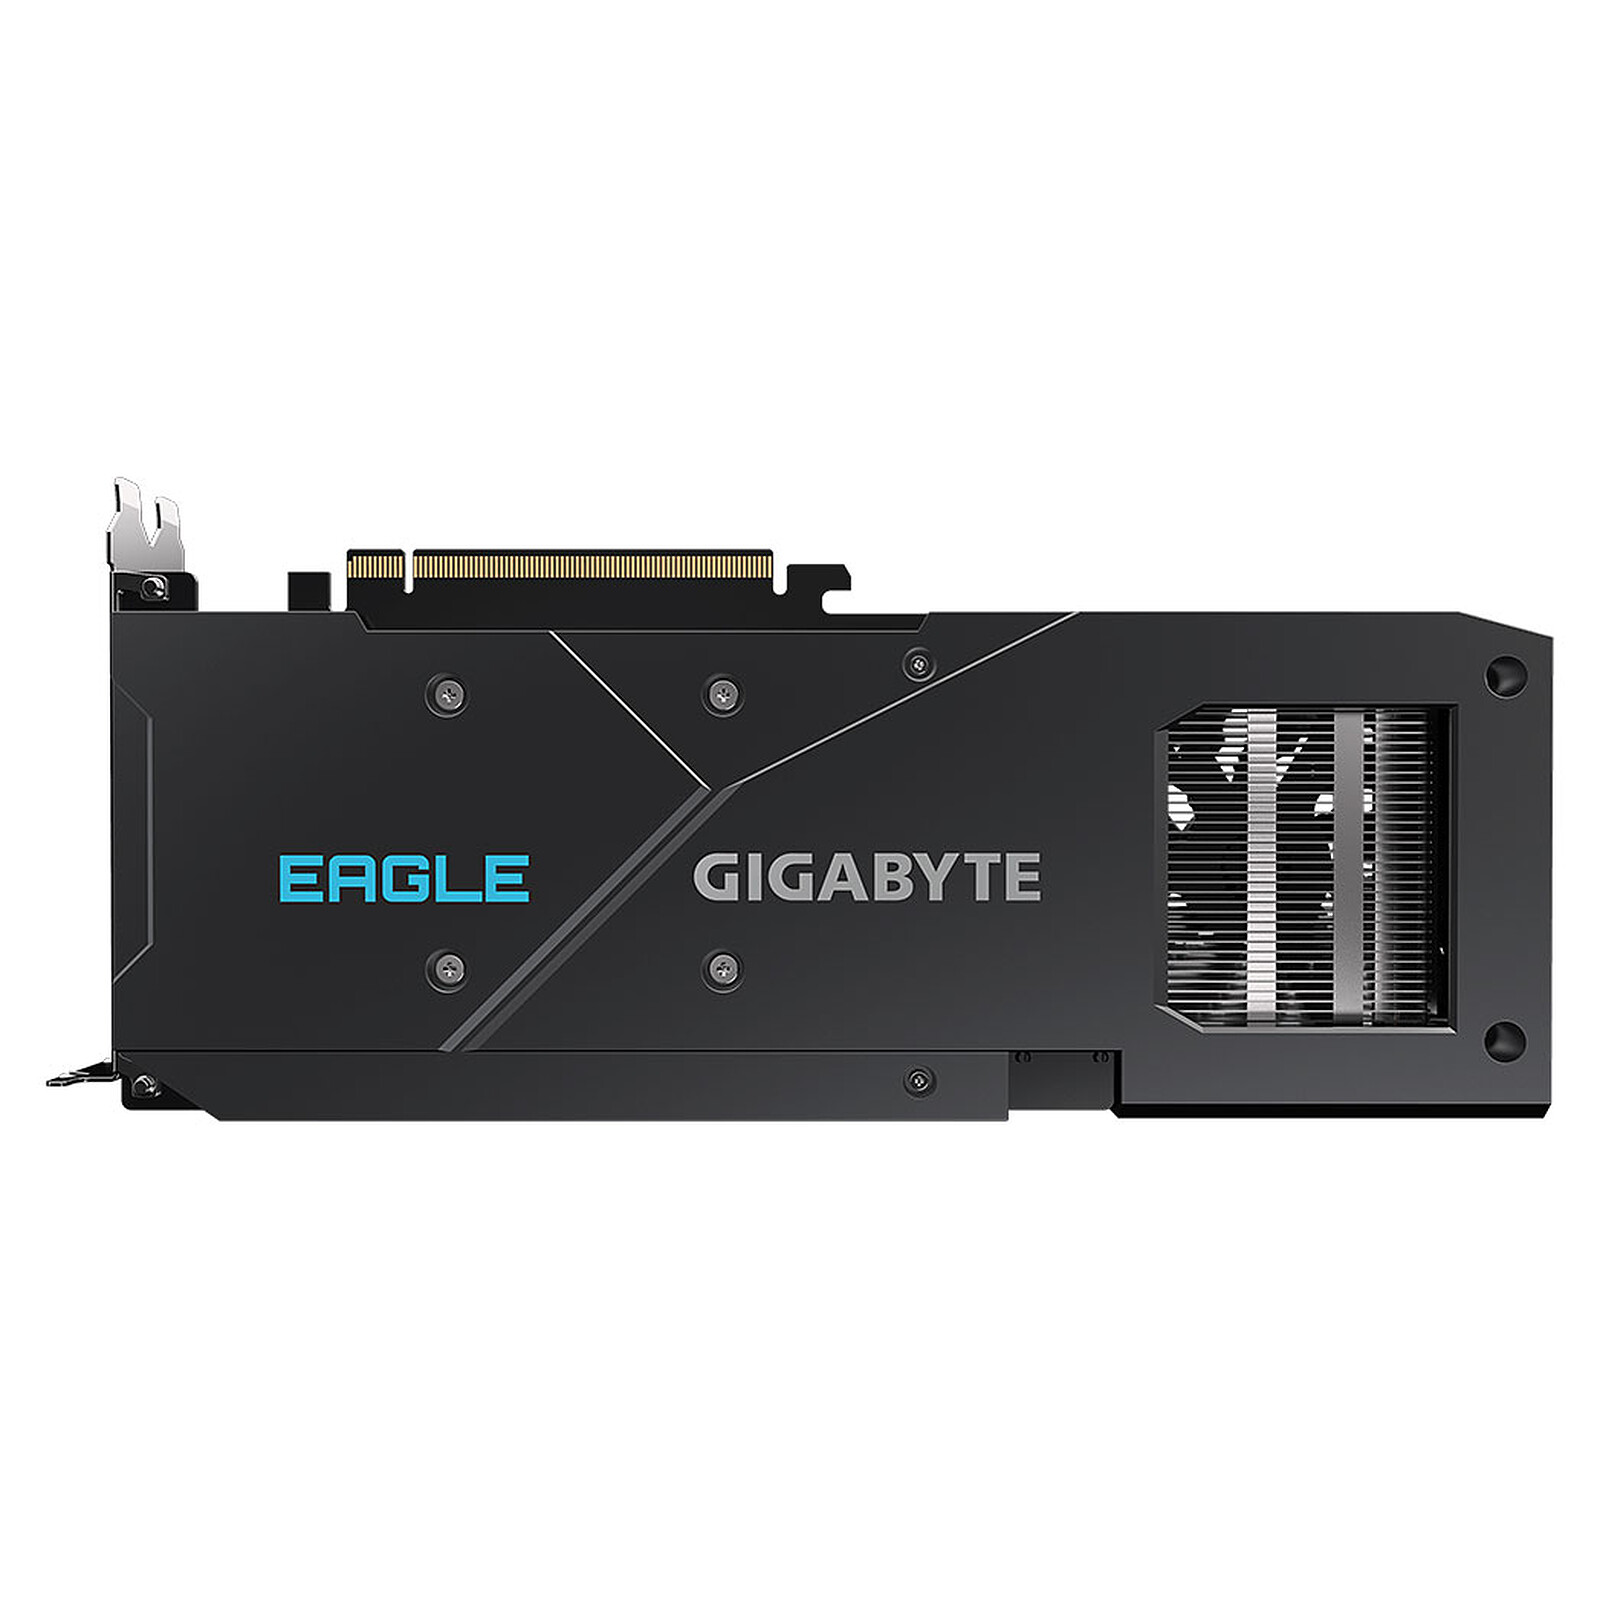 Gigabyte Radeon RX 6600 XT EAGLE 8G - Graphics card Gigabyte on